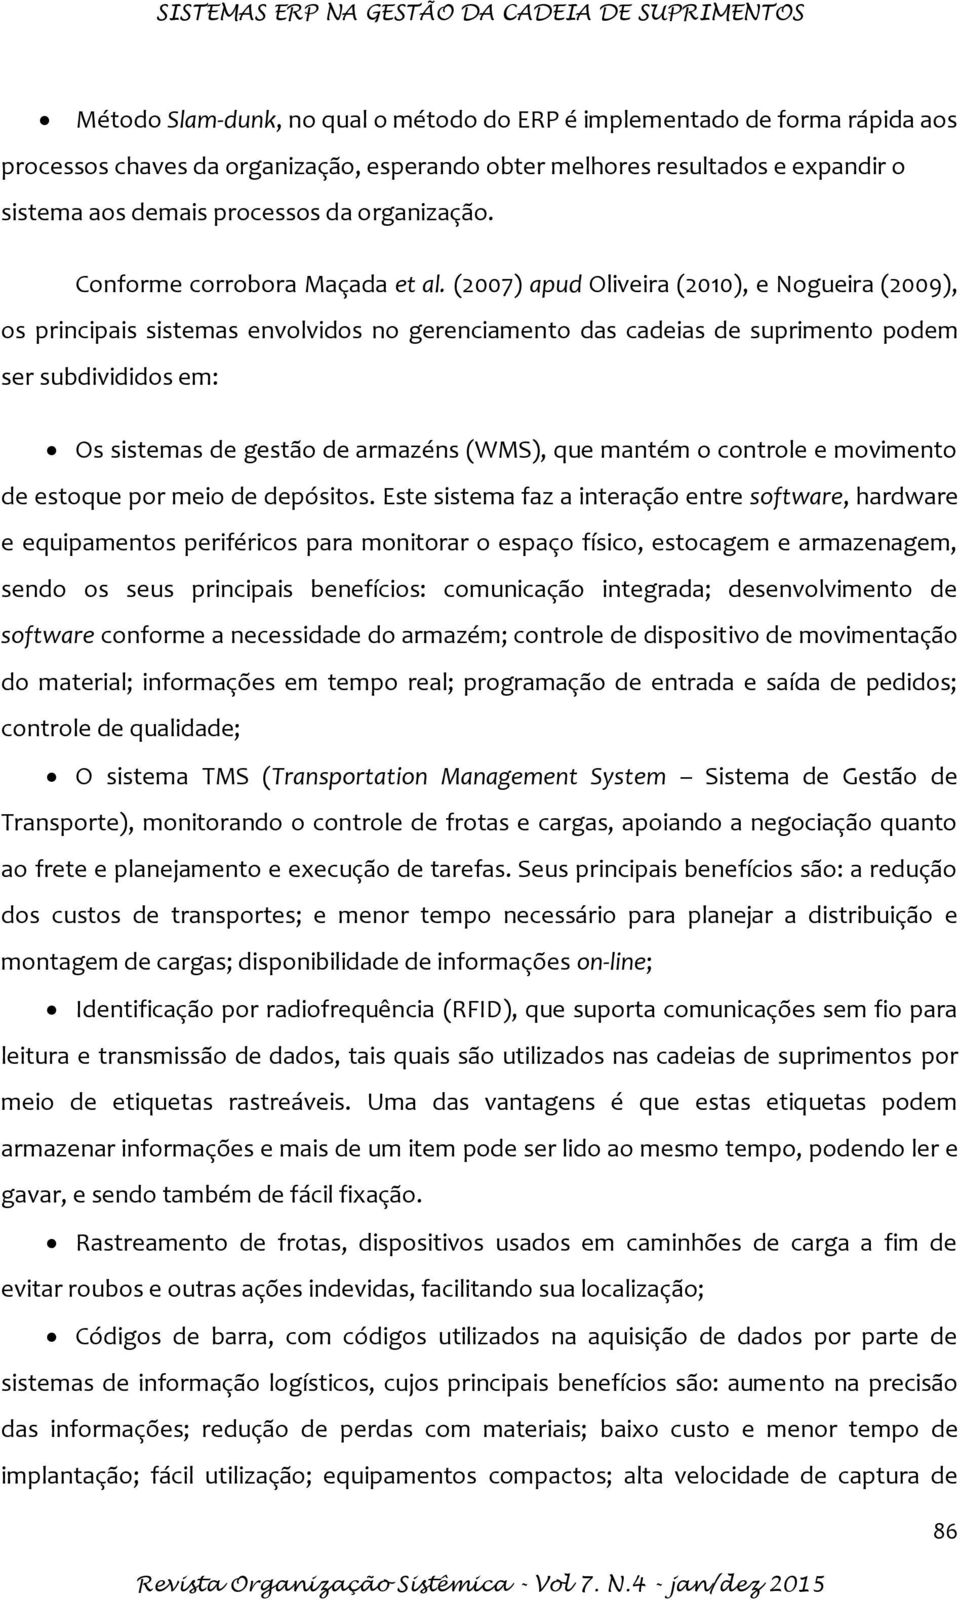 (2007) apud Oliveira (2010), e Nogueira (2009), os principais sistemas envolvidos no gerenciamento das cadeias de suprimento podem ser subdivididos em: Os sistemas de gestão de armazéns (WMS), que